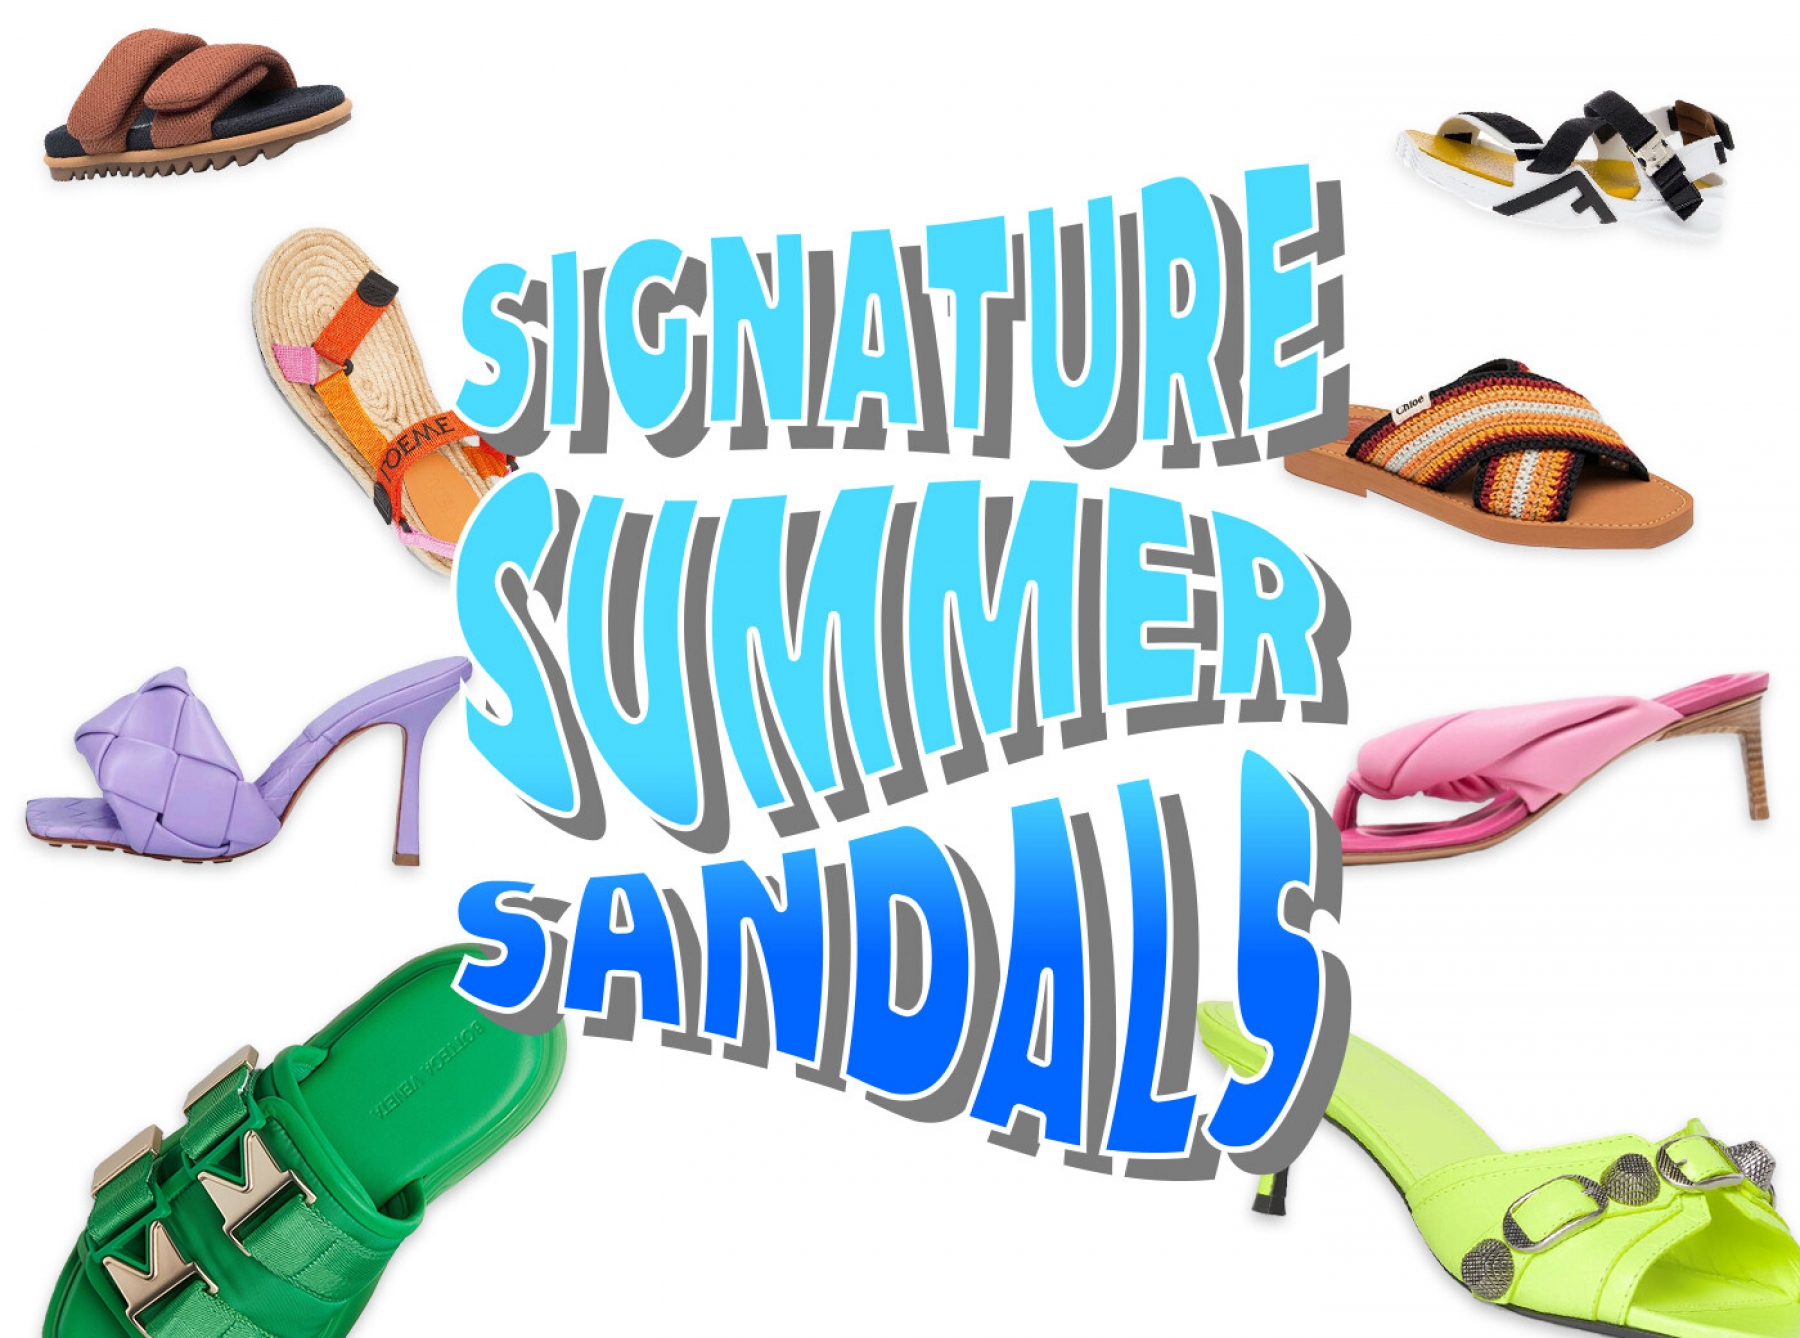 Signature Summer Sandals